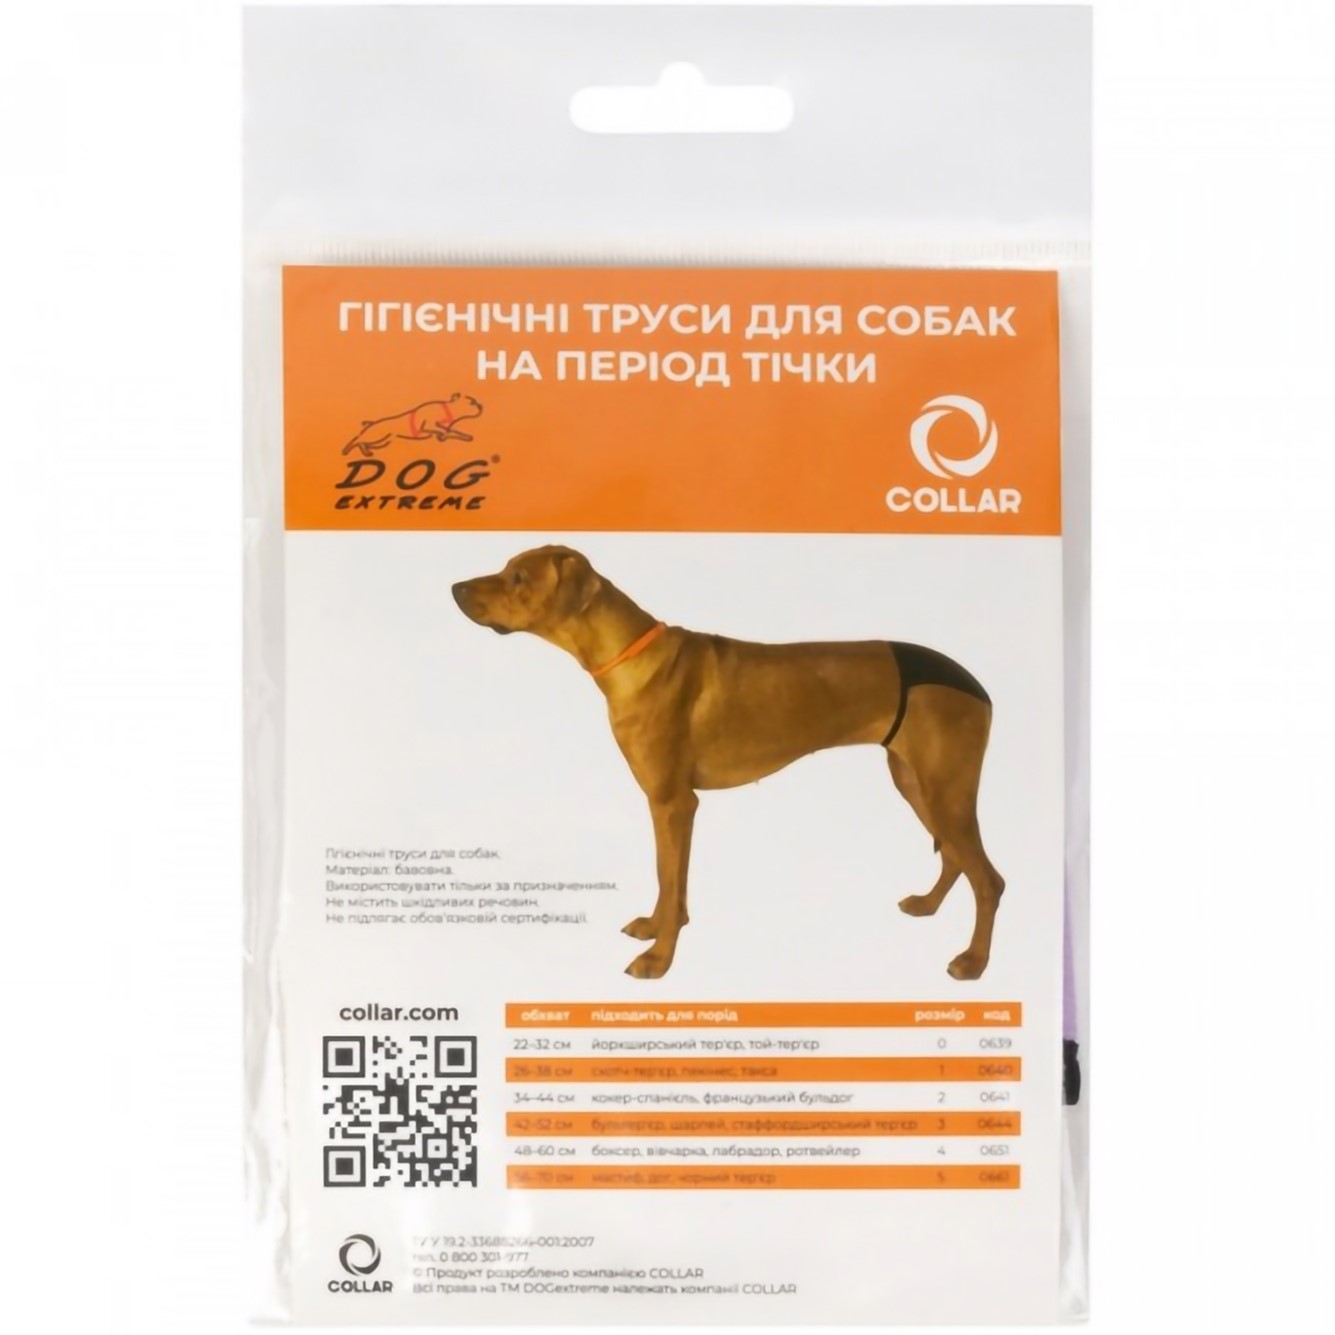 Гигиенические трусы для собак Collar Dog Extremе №1 (А:26-38 см) скотч-терьер, пекинес, синие (640) - фото 1